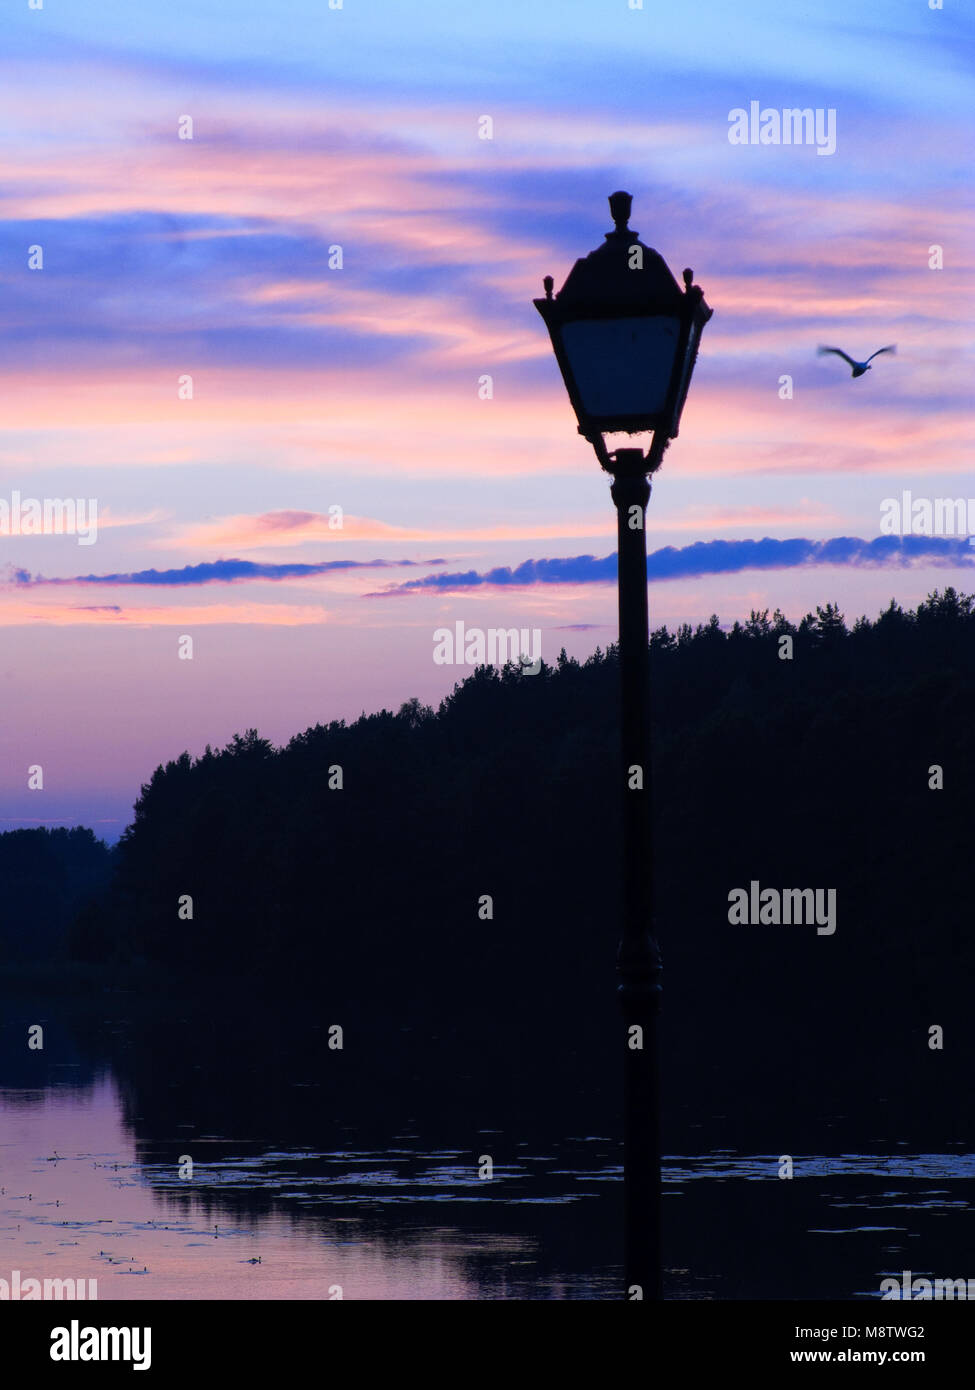 Coucher de soleil sur Mylof lake. Les pinèdes de Tuchola, province de Poméranie, Pologne, l'Europe. Banque D'Images